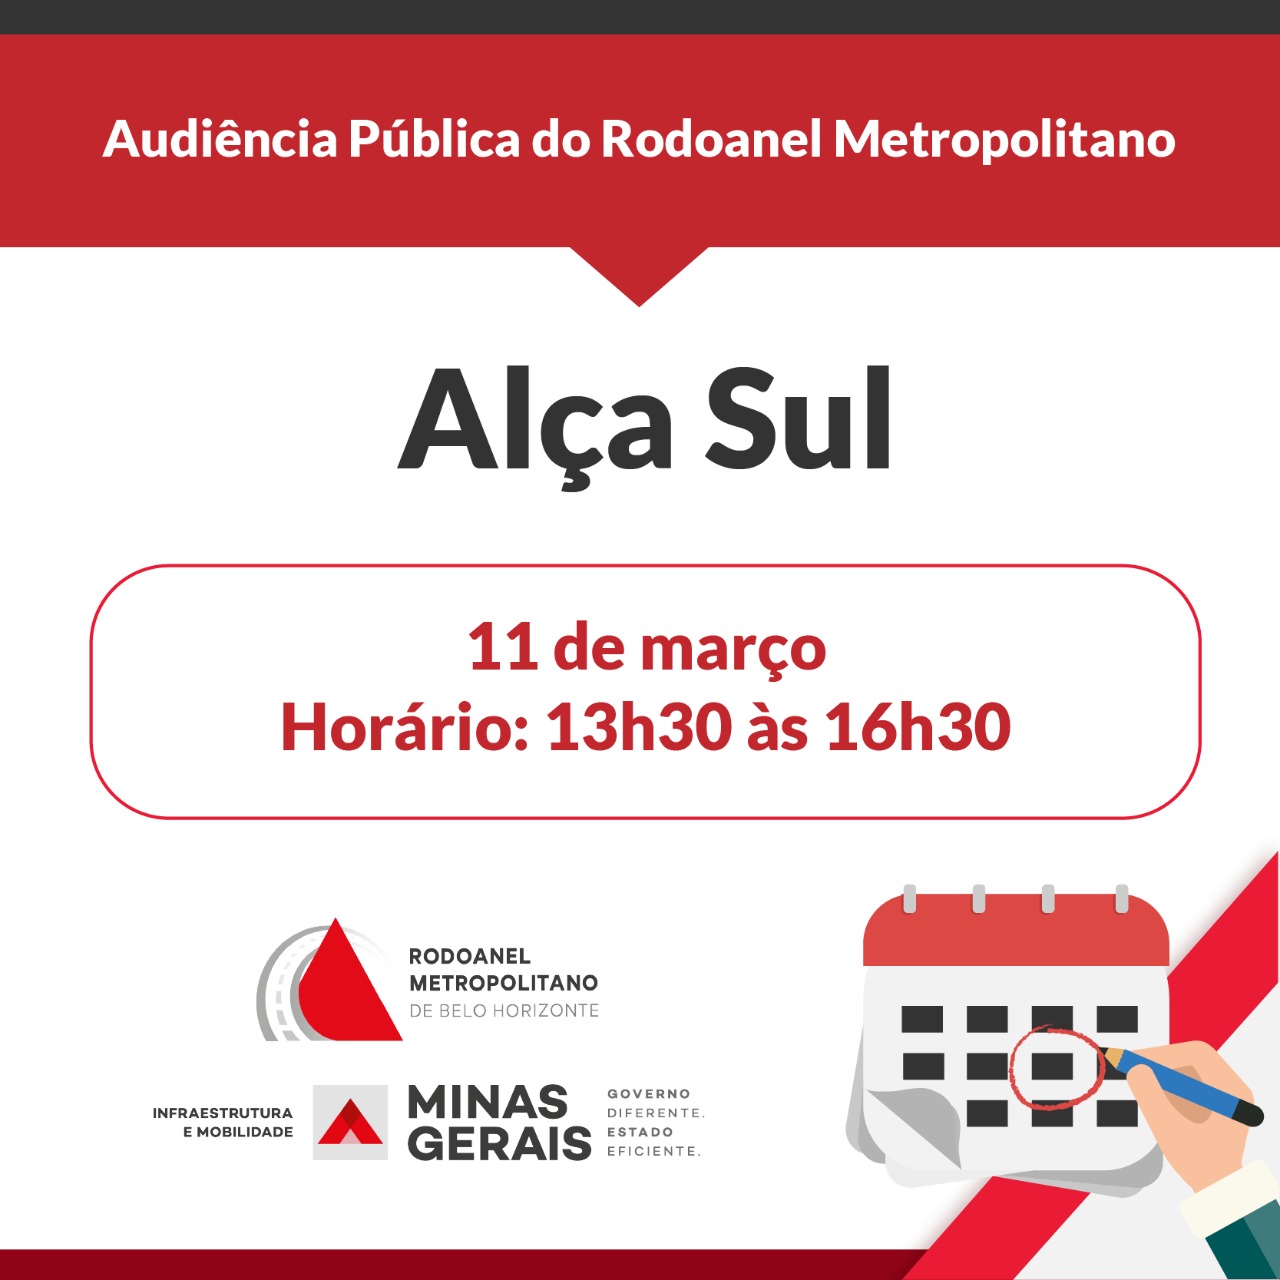 Audiência Pública da Alça Sul do Rodoanel Metropolitano será realizada nesta quinta-feira (11/3)